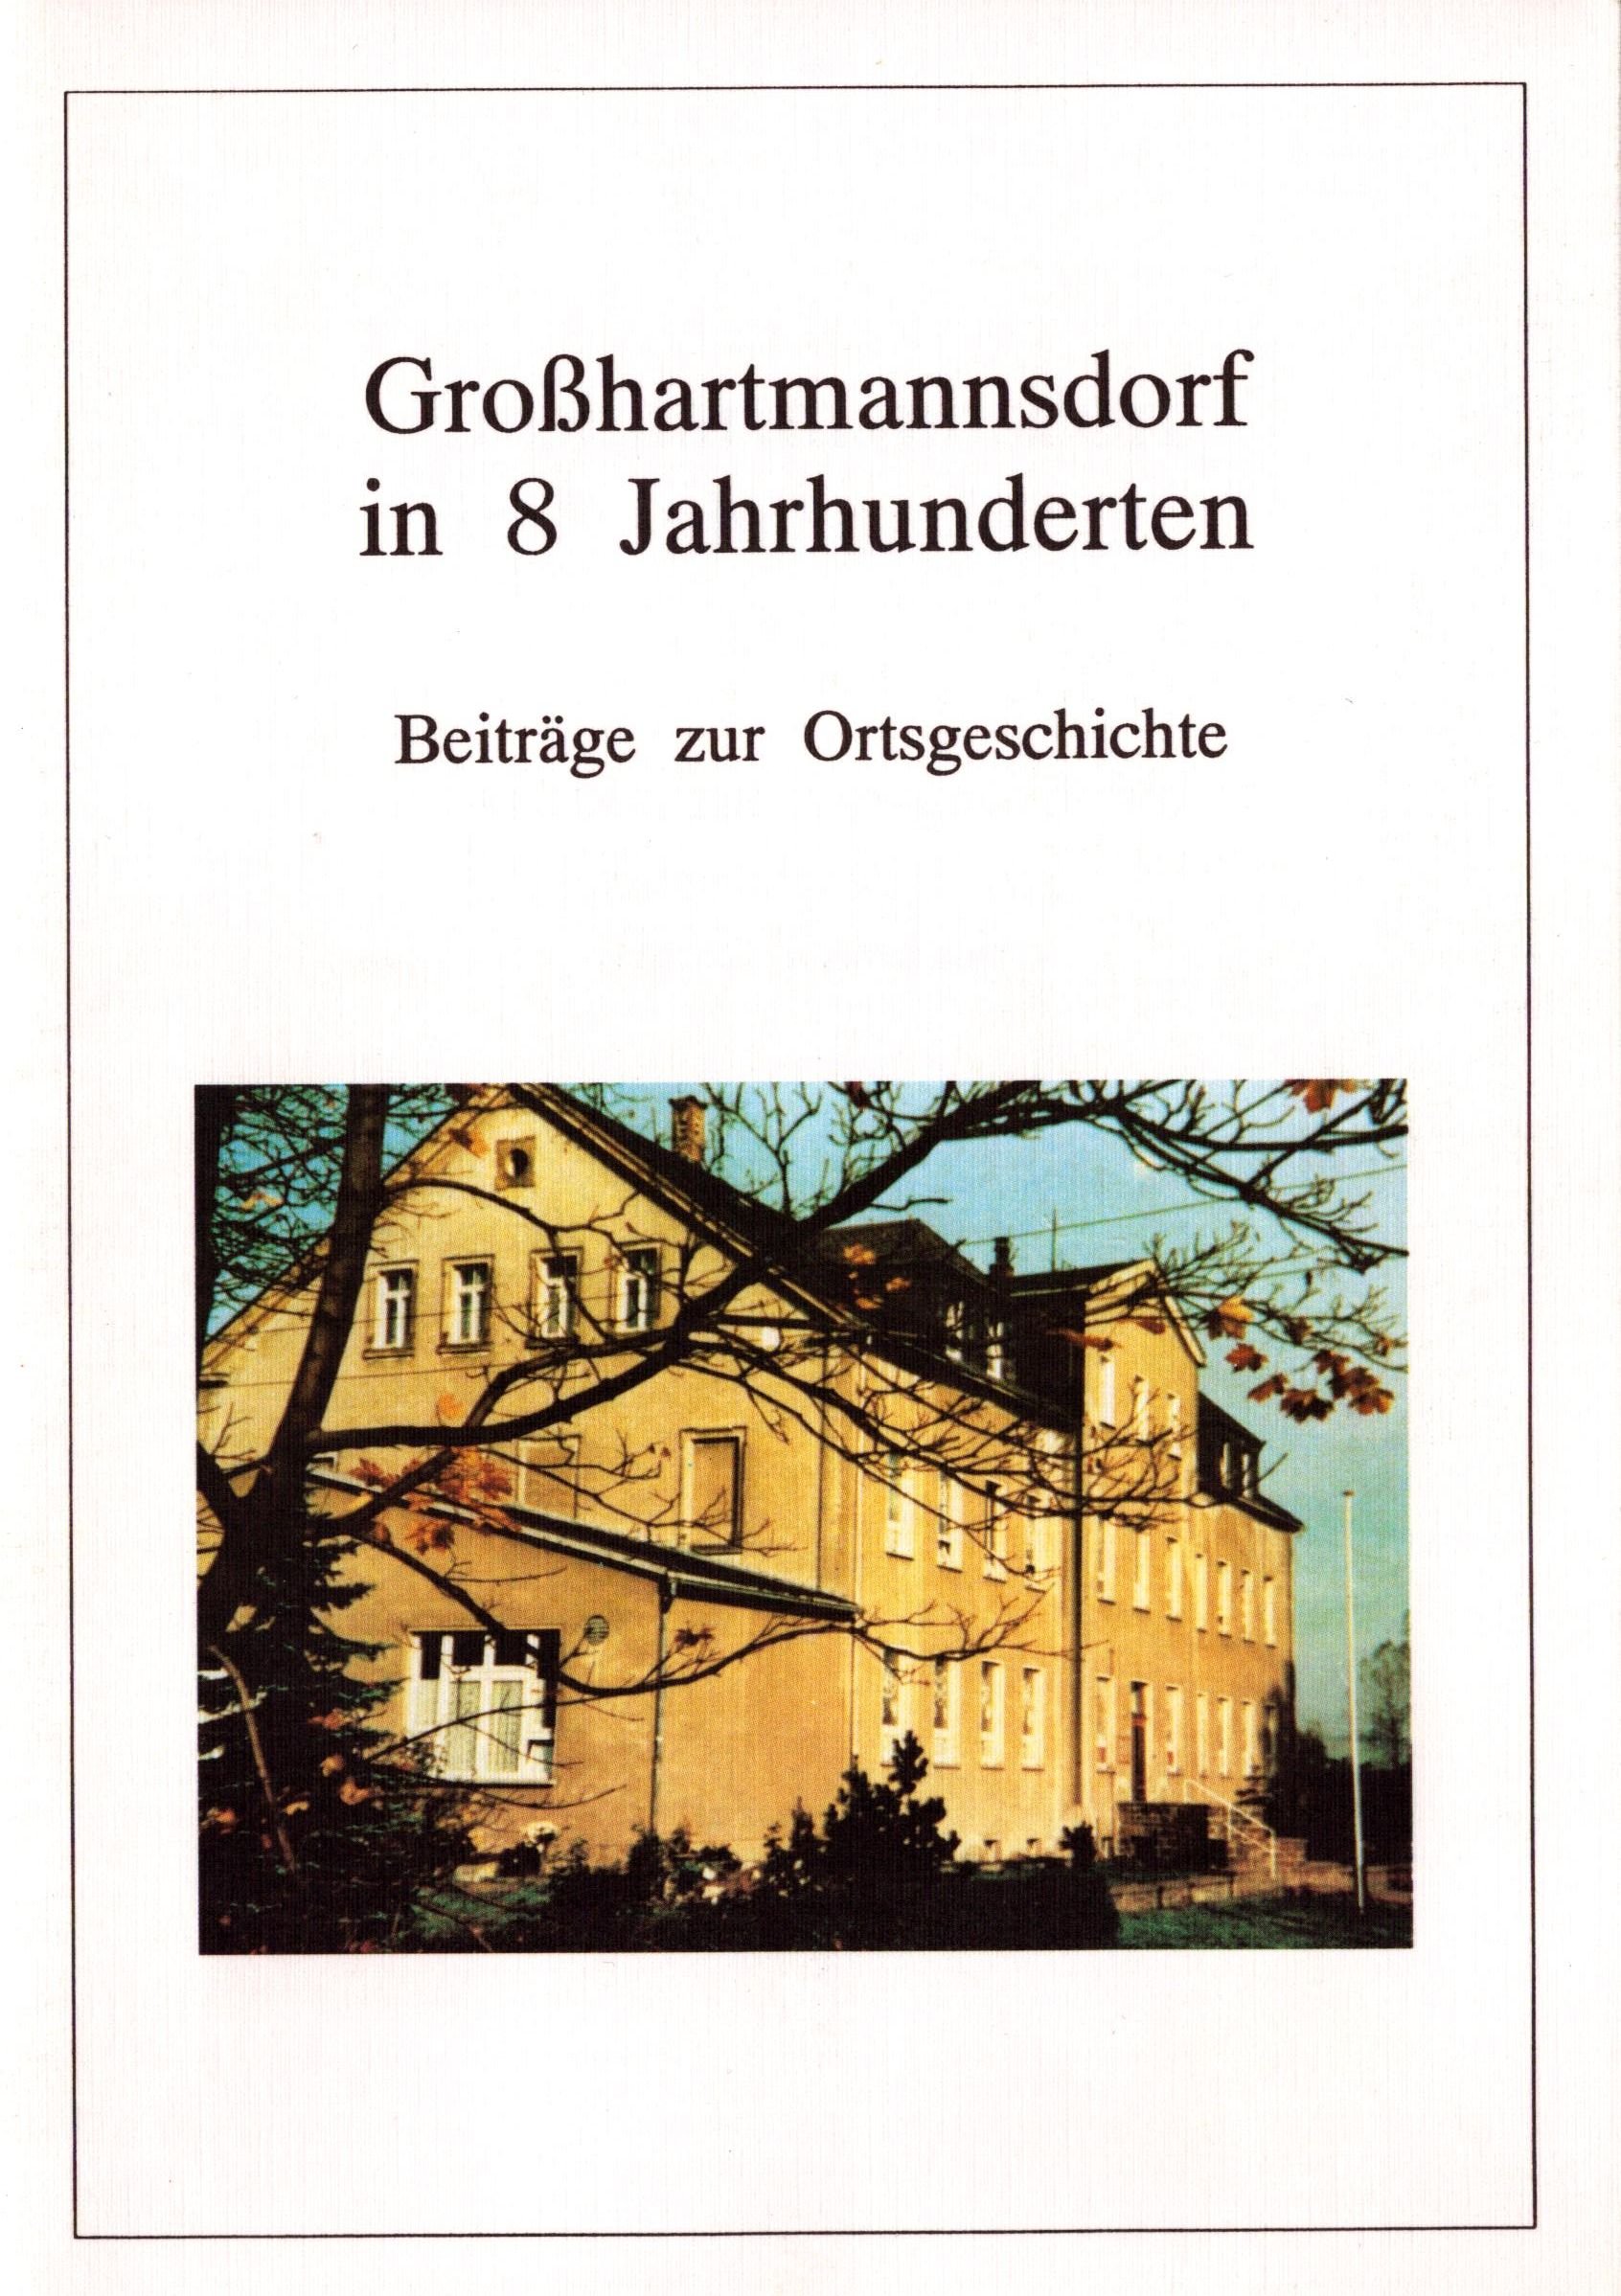 Großhartmannsdorf in 8 Jahrhunderten (Archiv SAXONIA-FREIBERG-STIFTUNG CC BY-NC-SA)